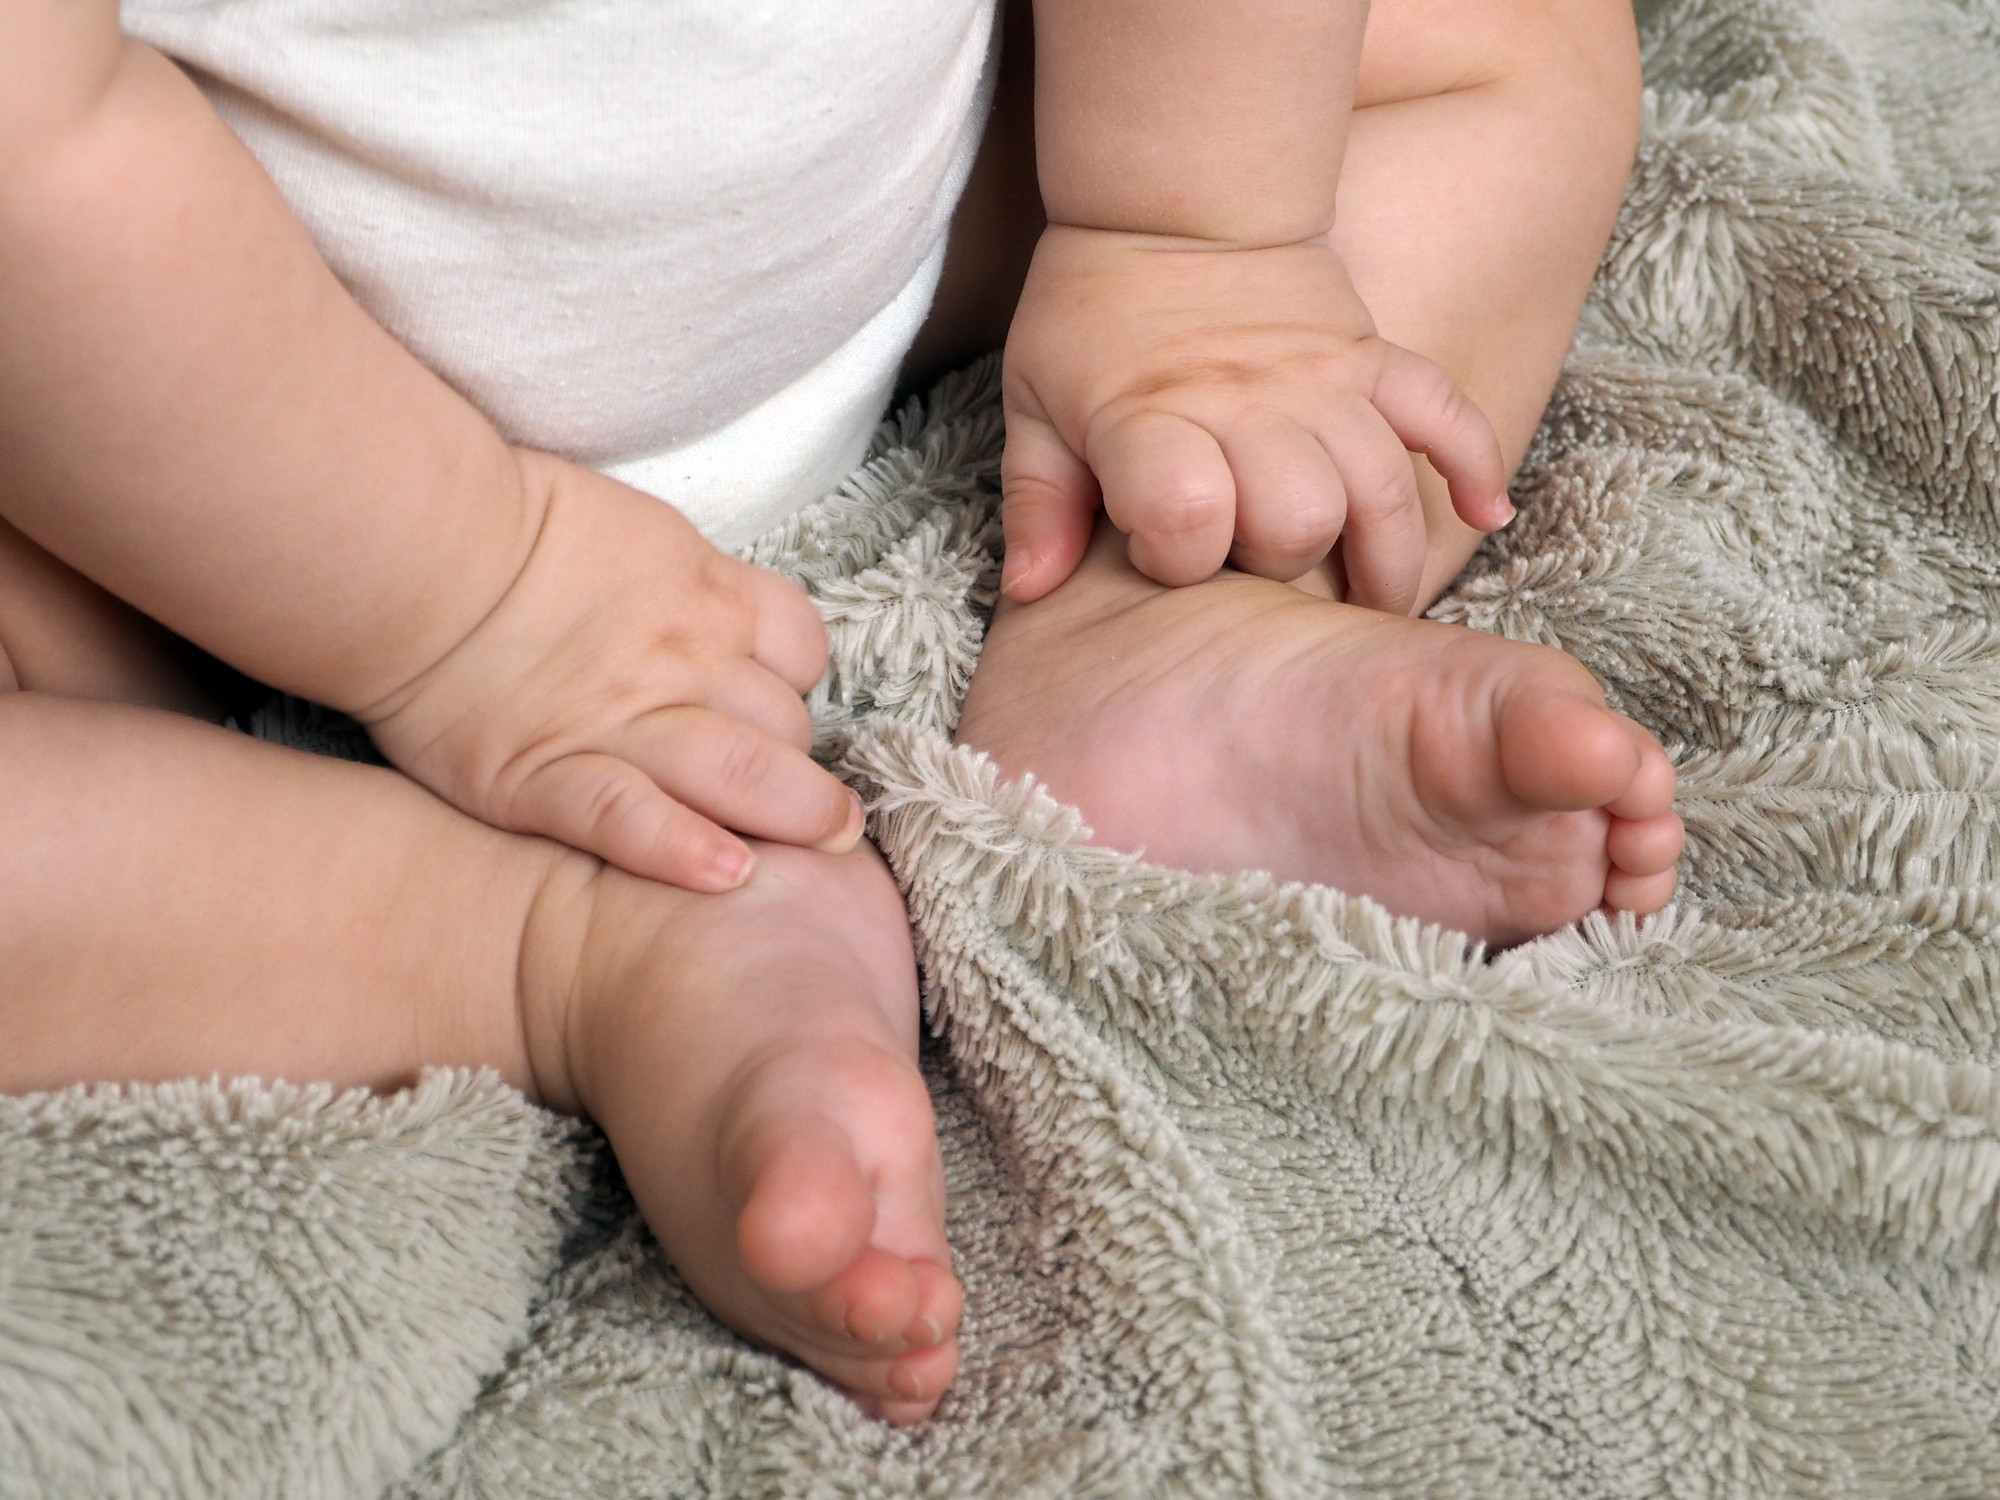 کمک به وزن گیری نوزاد در ۶ ماه اول تولد